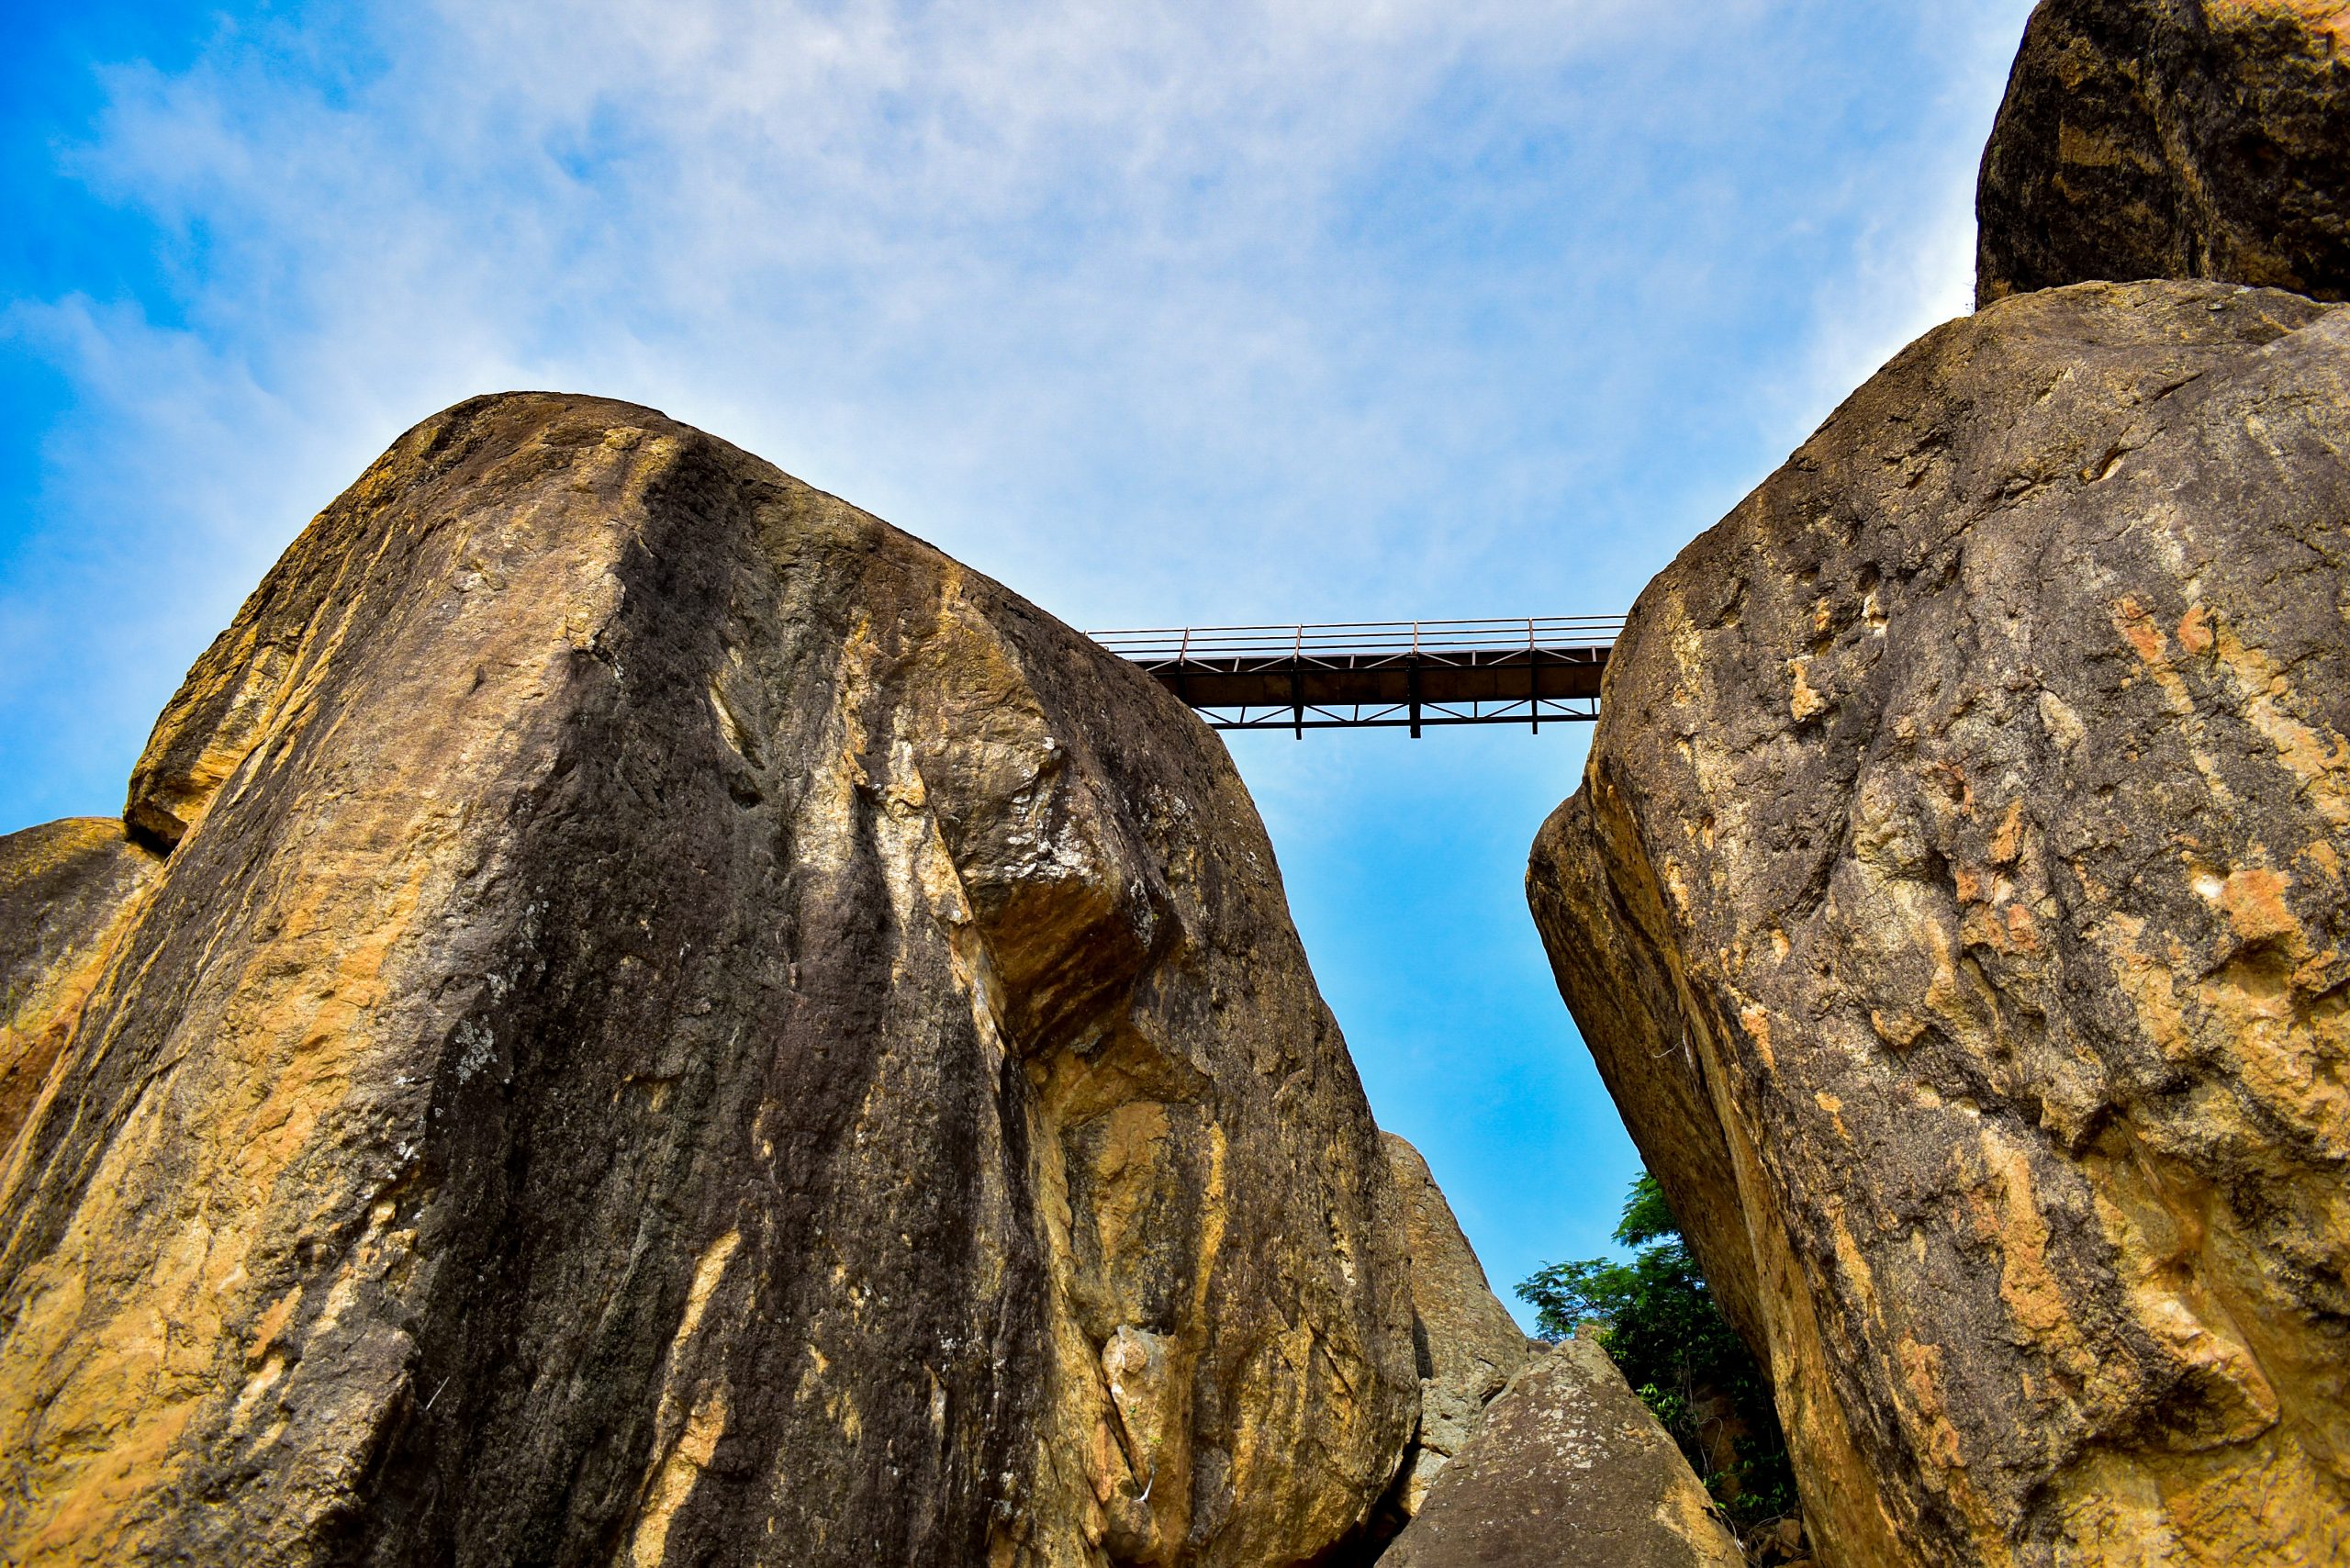 Bridge over the rocks